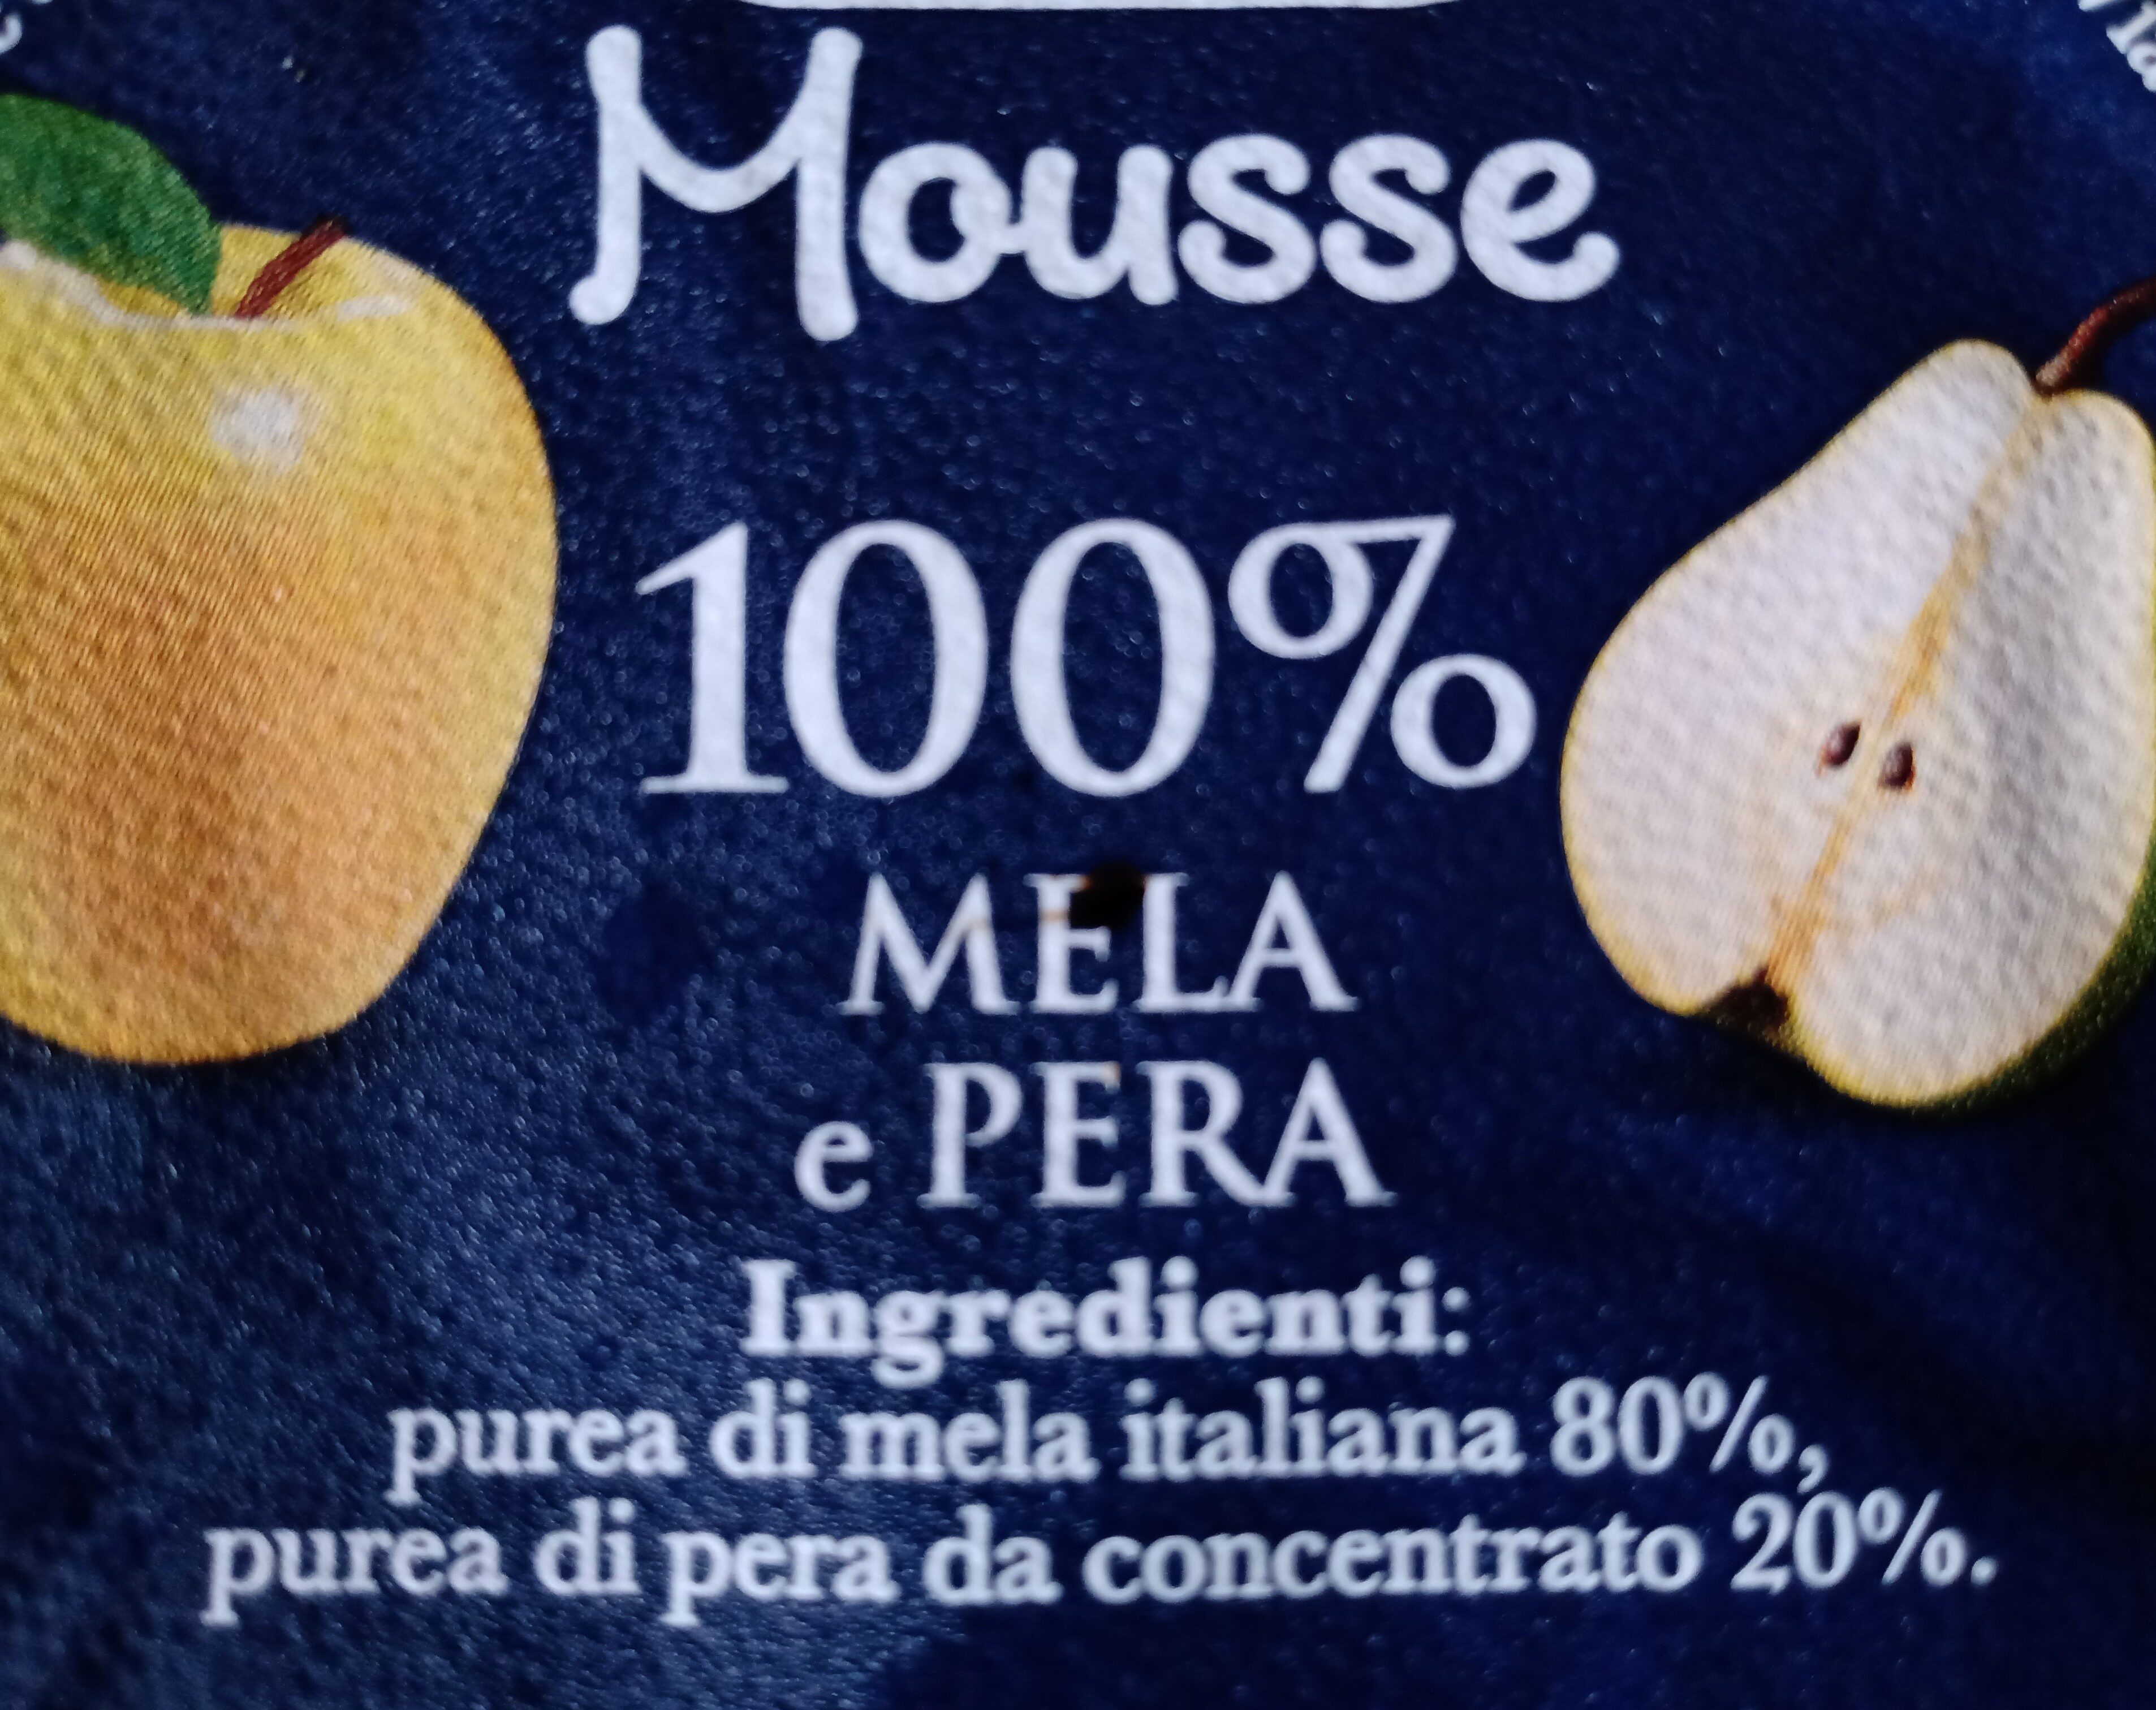 Mousse mela e pera - Ingredienti